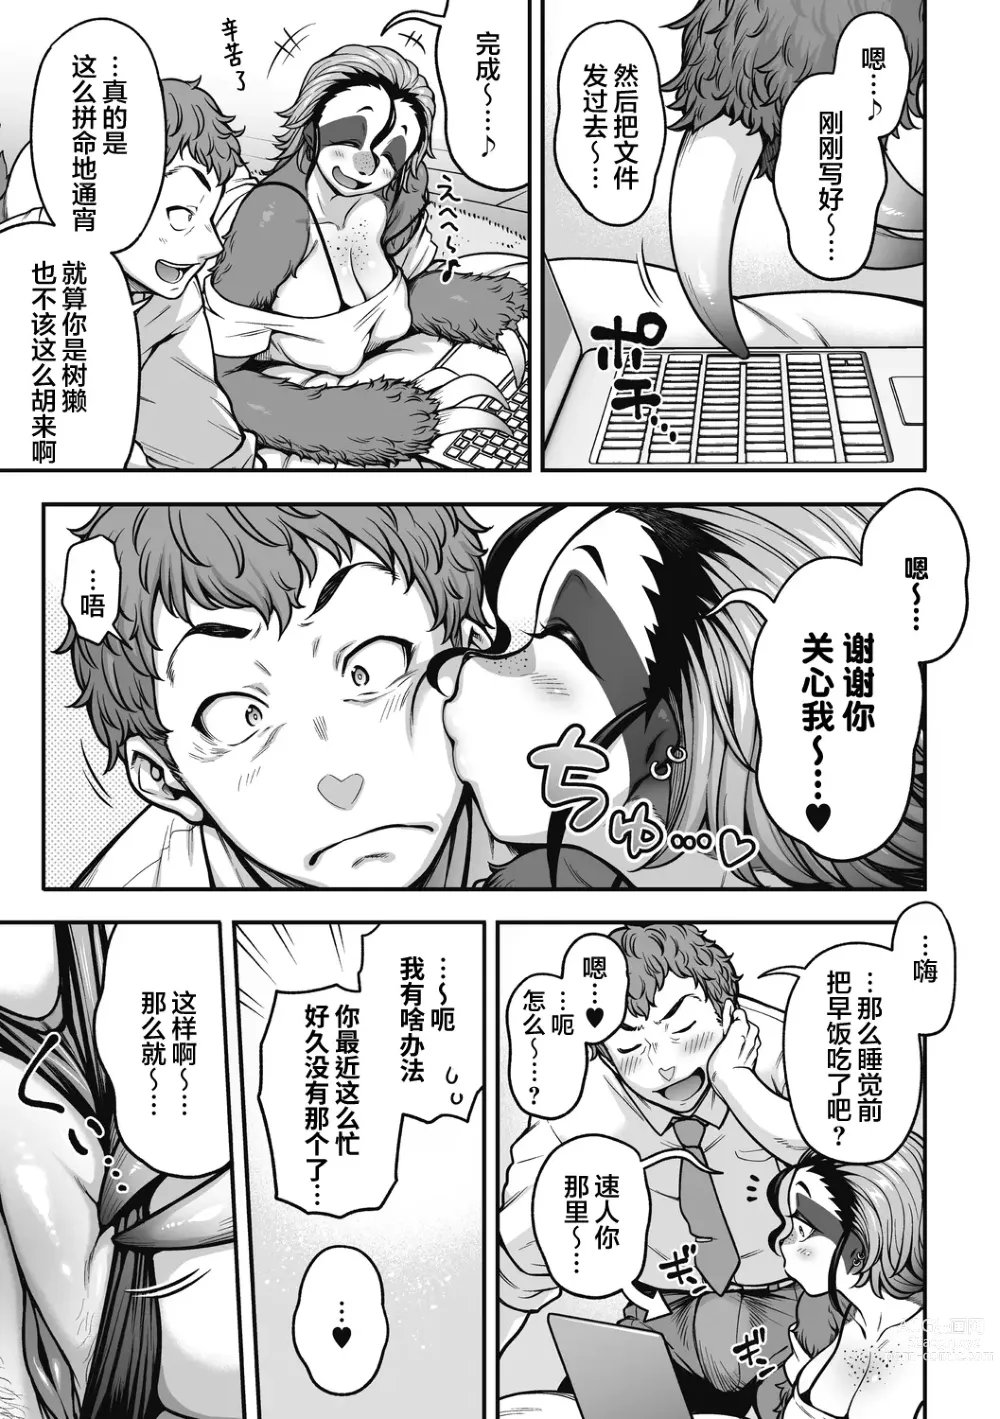 Page 4 of manga Namakete Torokete Tsunagatte